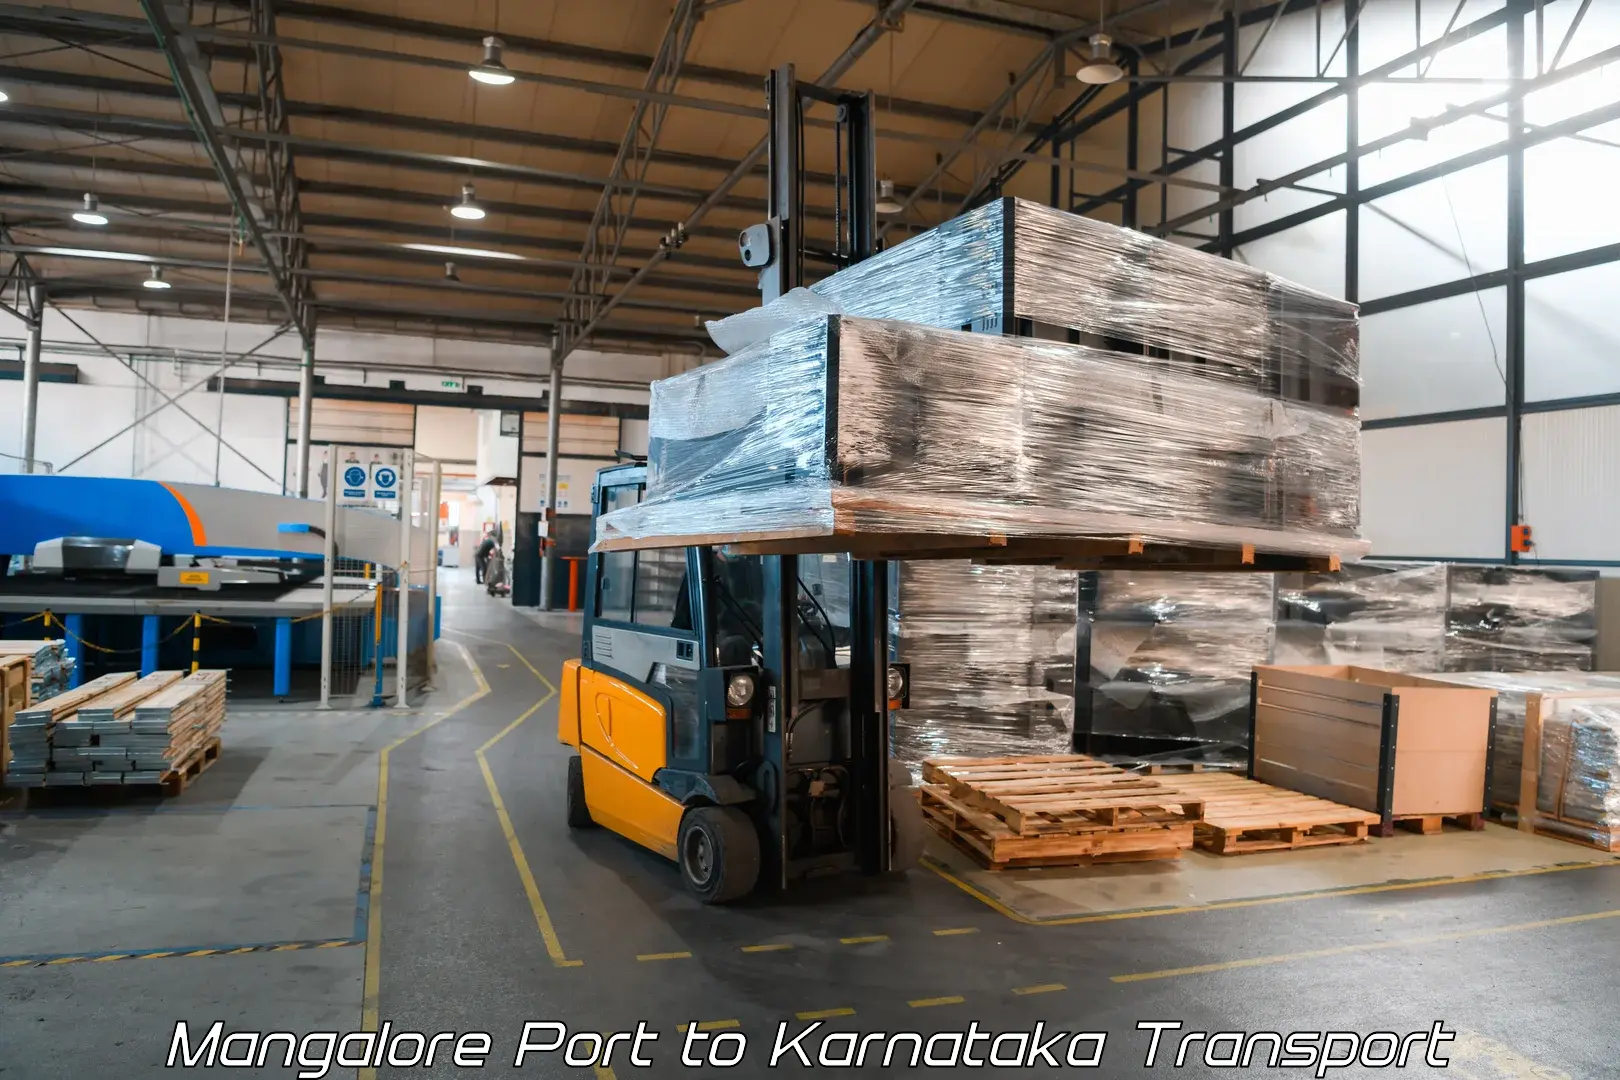 Vehicle parcel service Mangalore Port to Hunsur